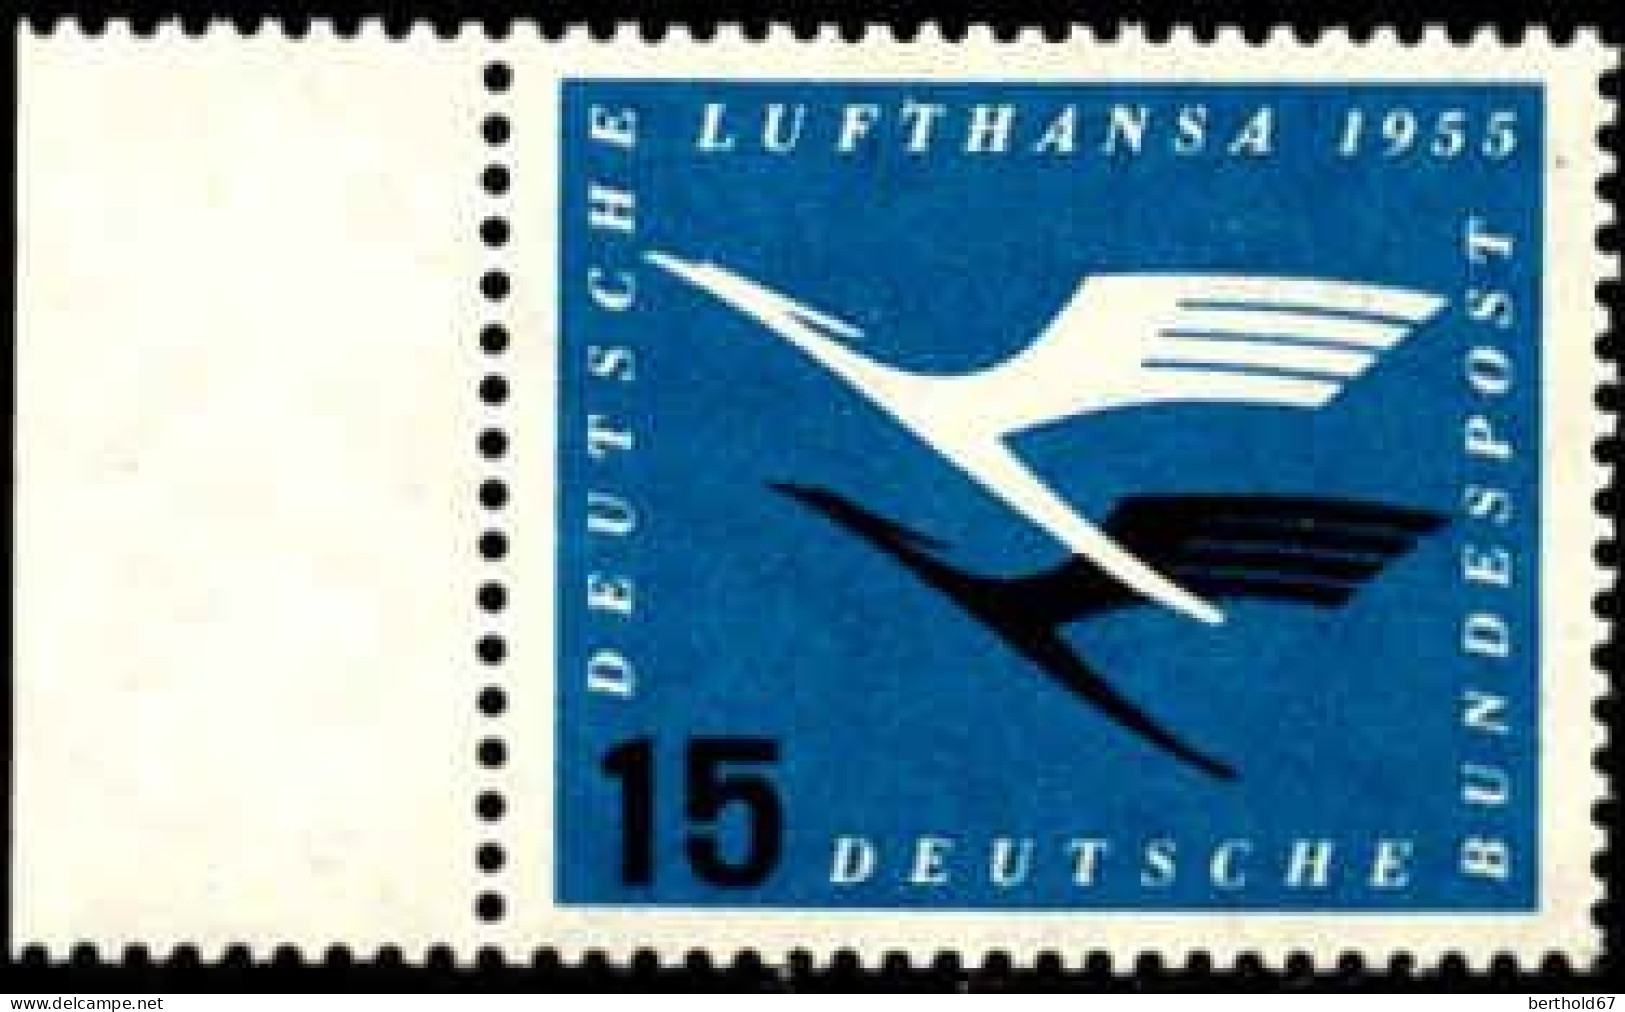 RFA Poste N** Yv:  83 Mi:207 Deutsche Lufthansa Bord De Feuille - Unused Stamps